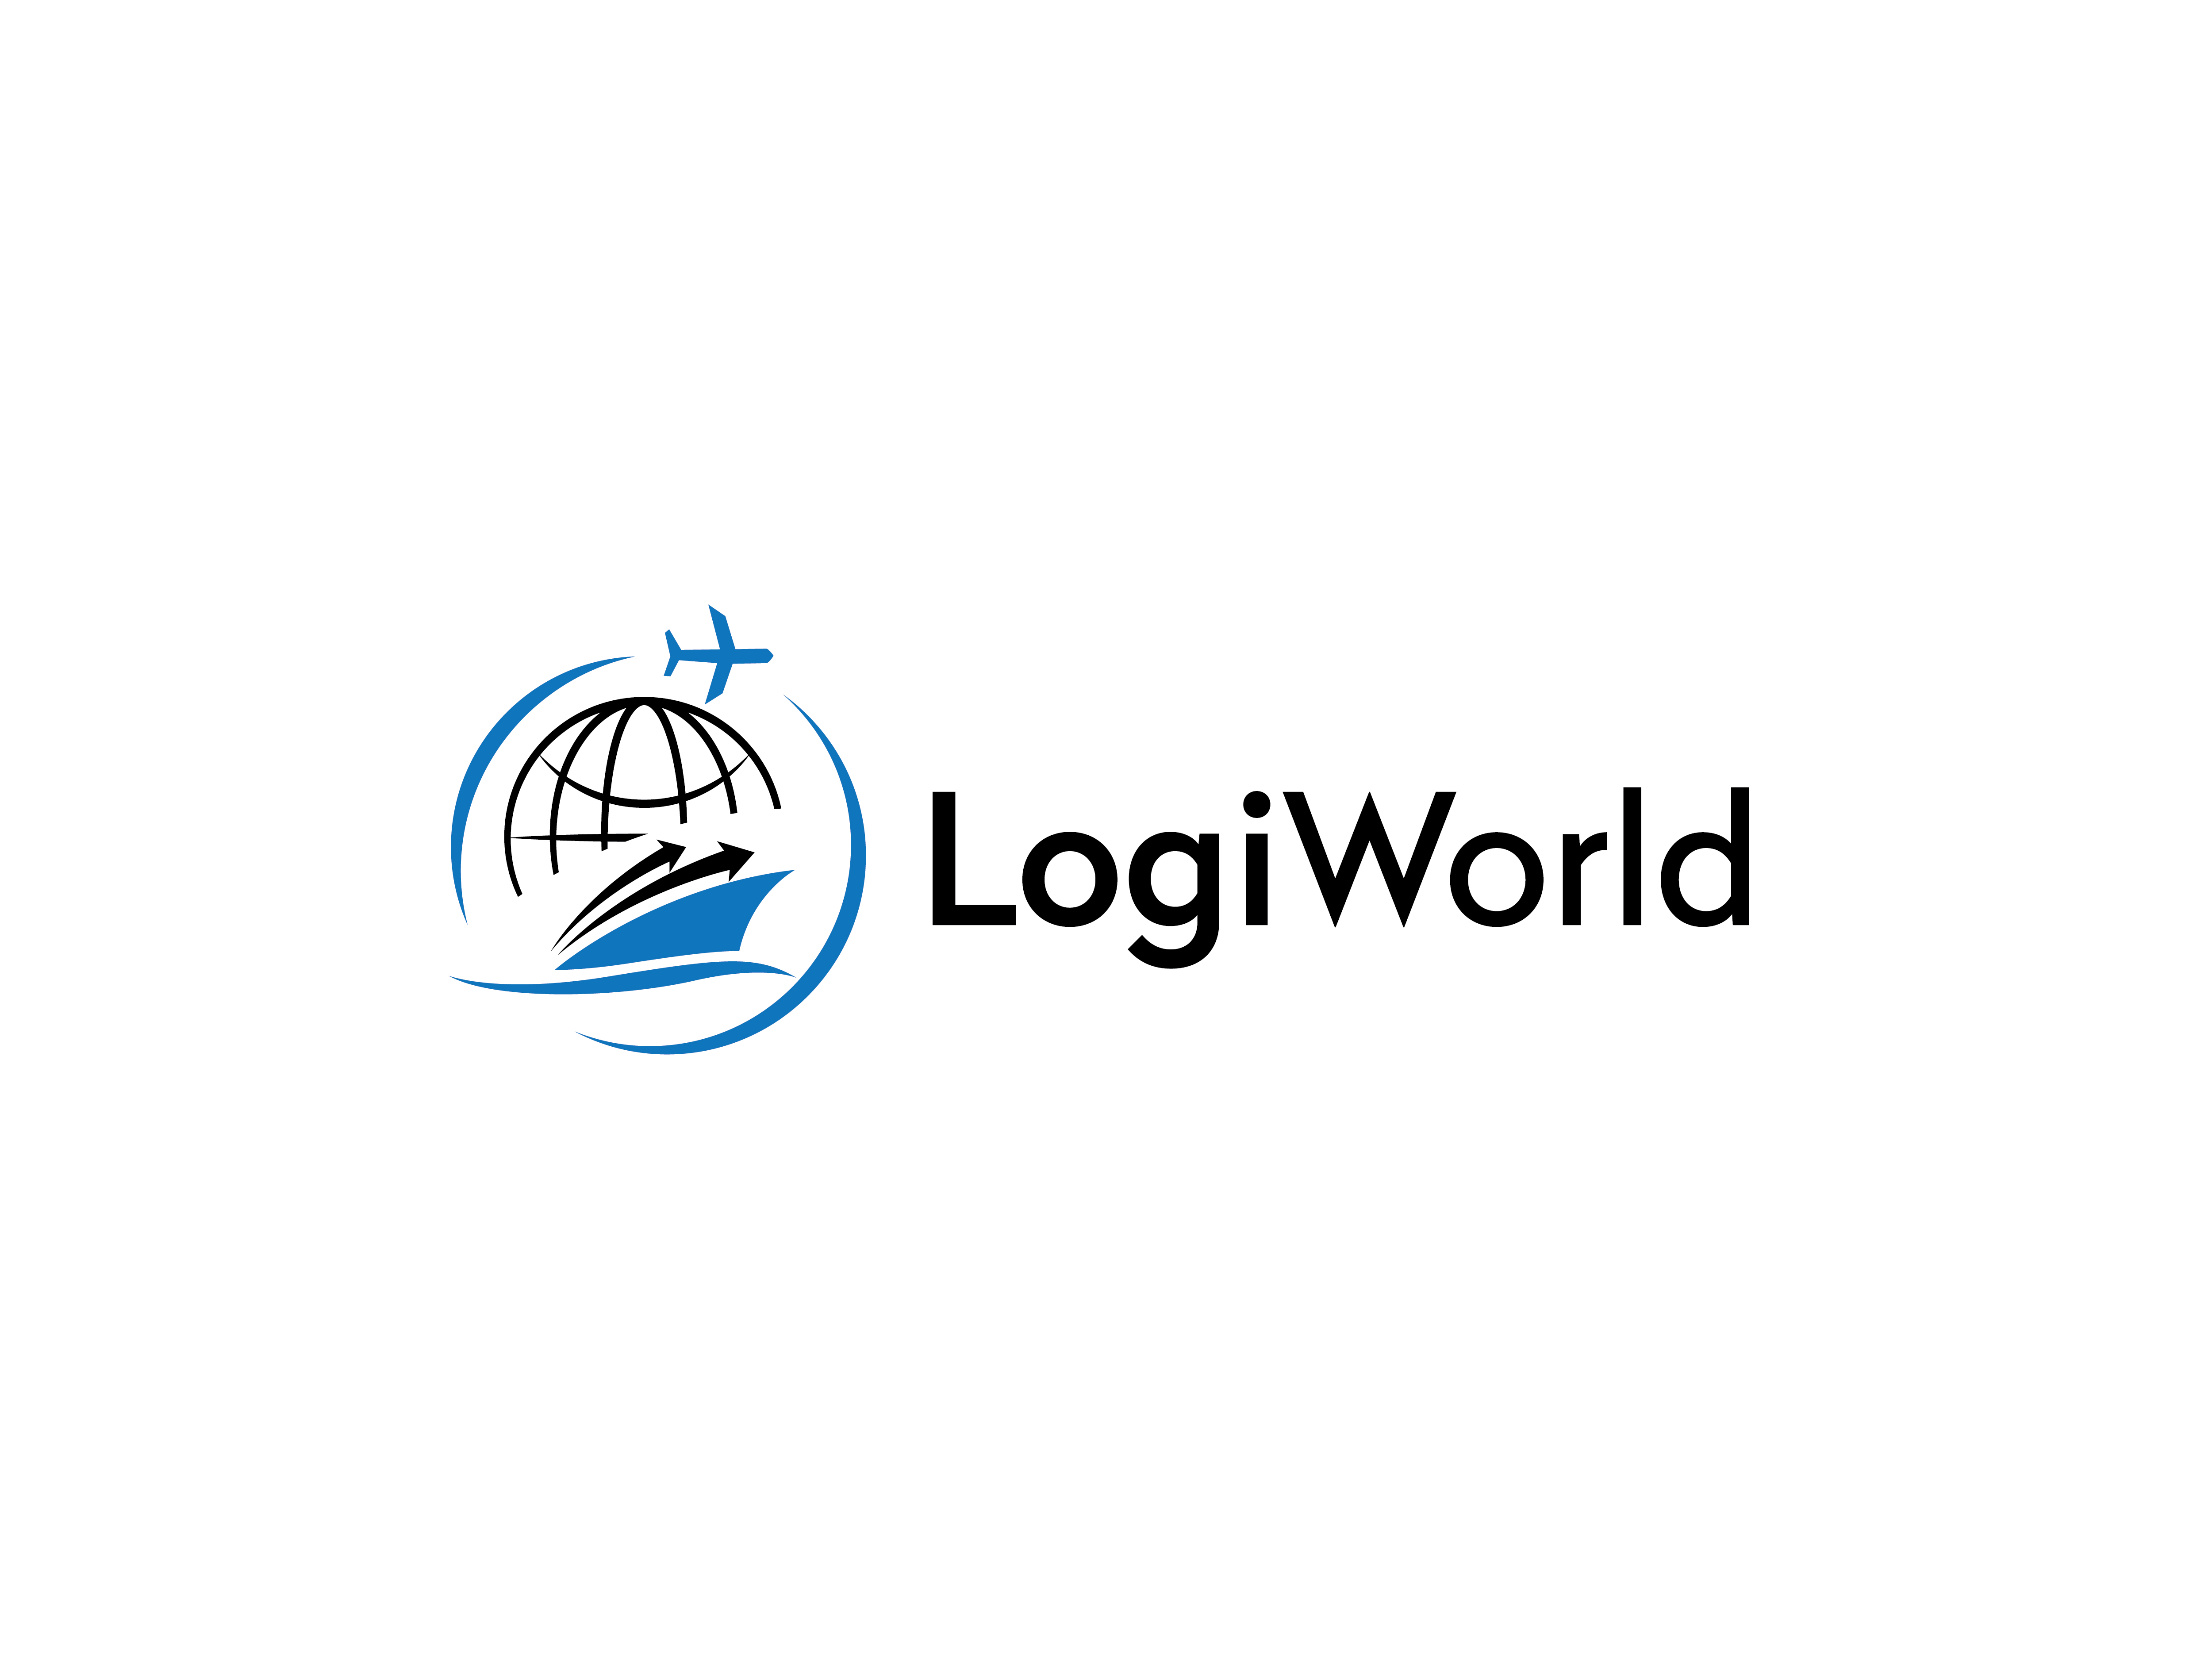 LogiWorld Corporation